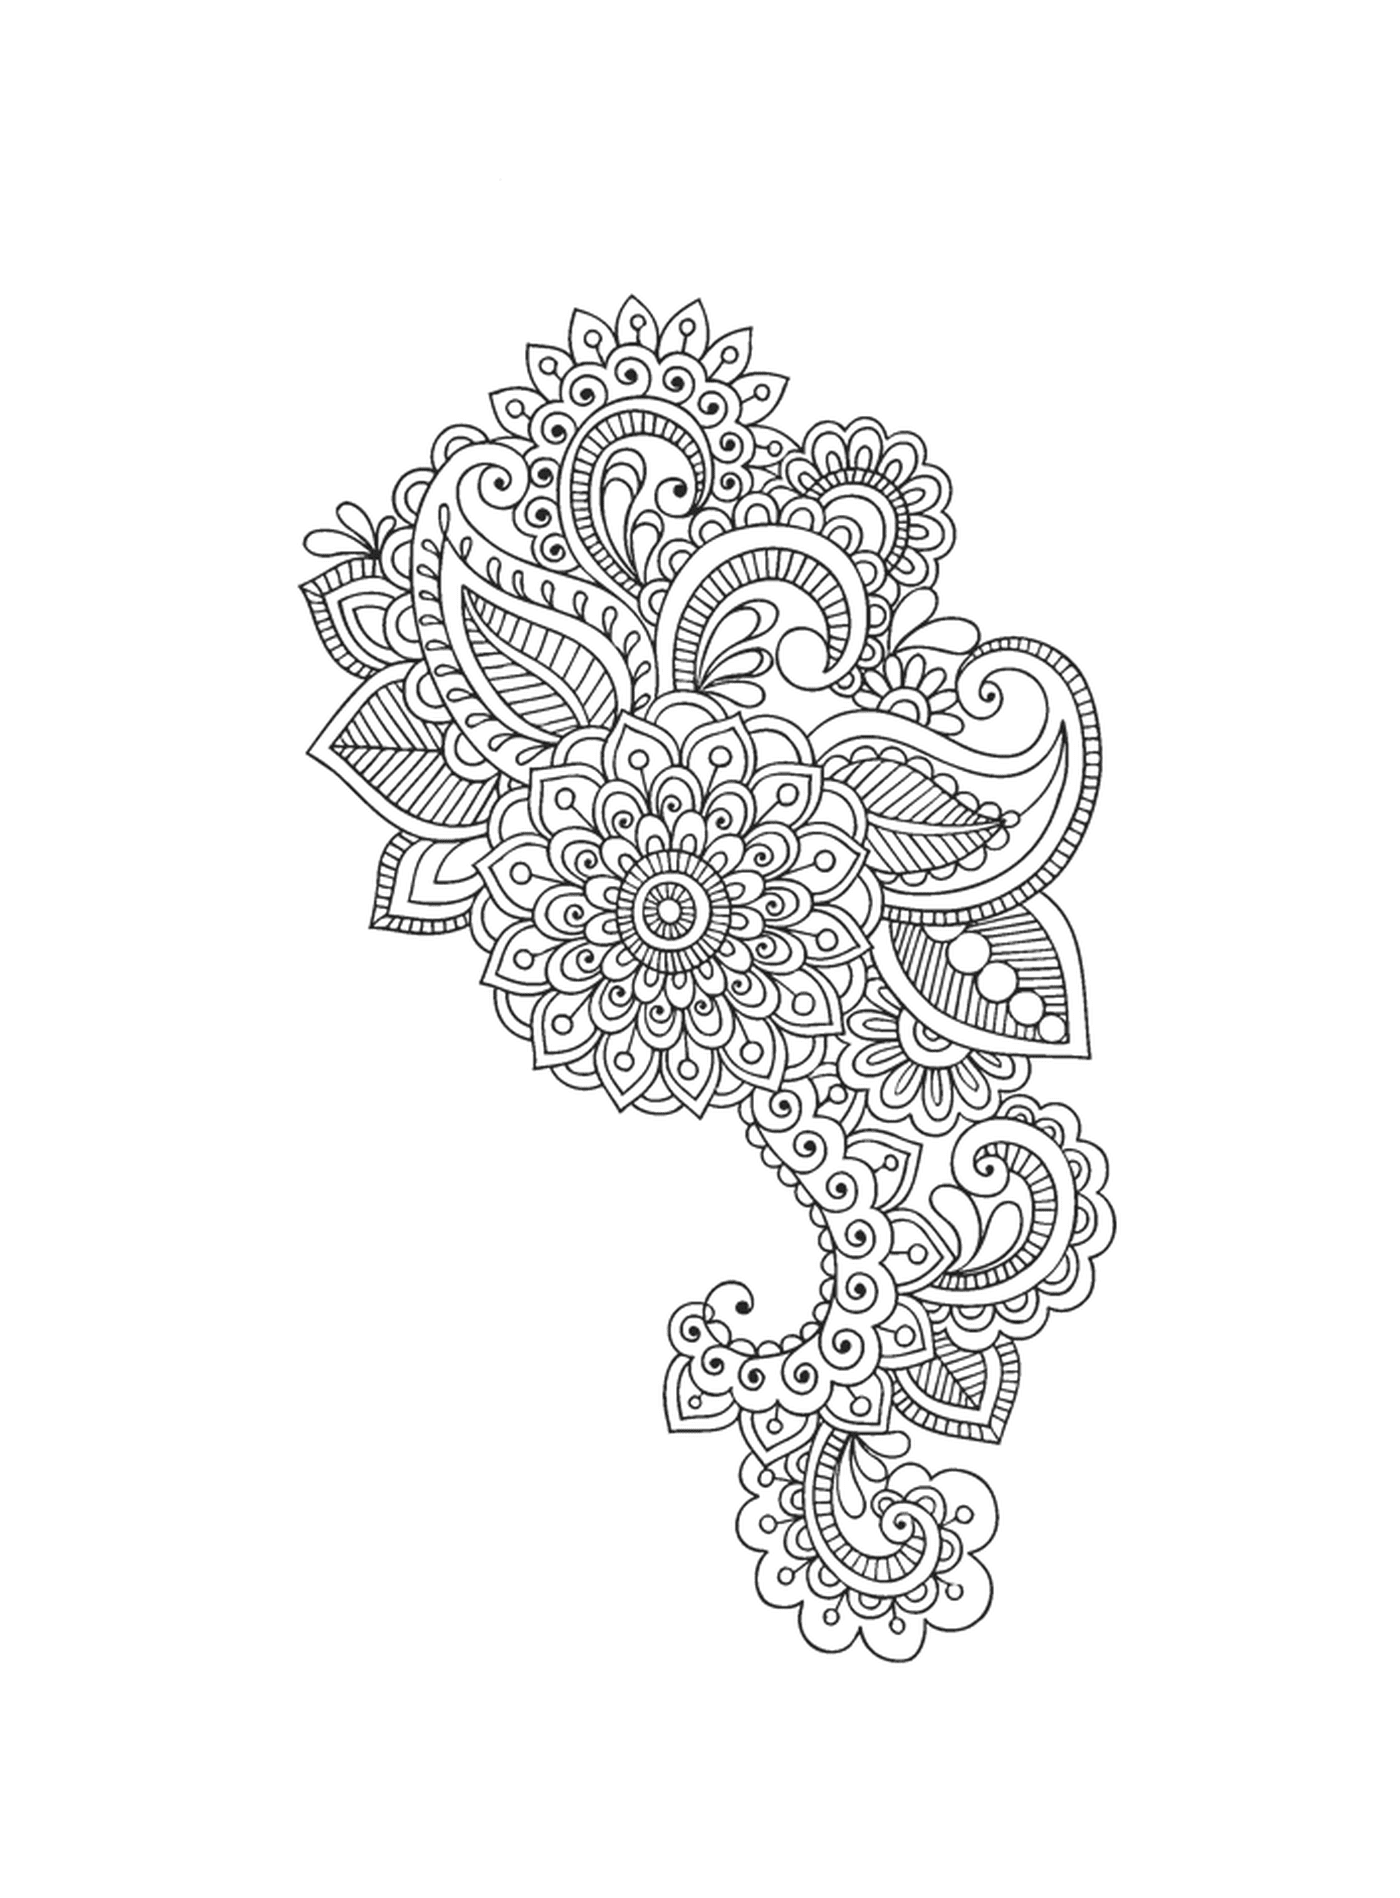   Un motif floral complexe 